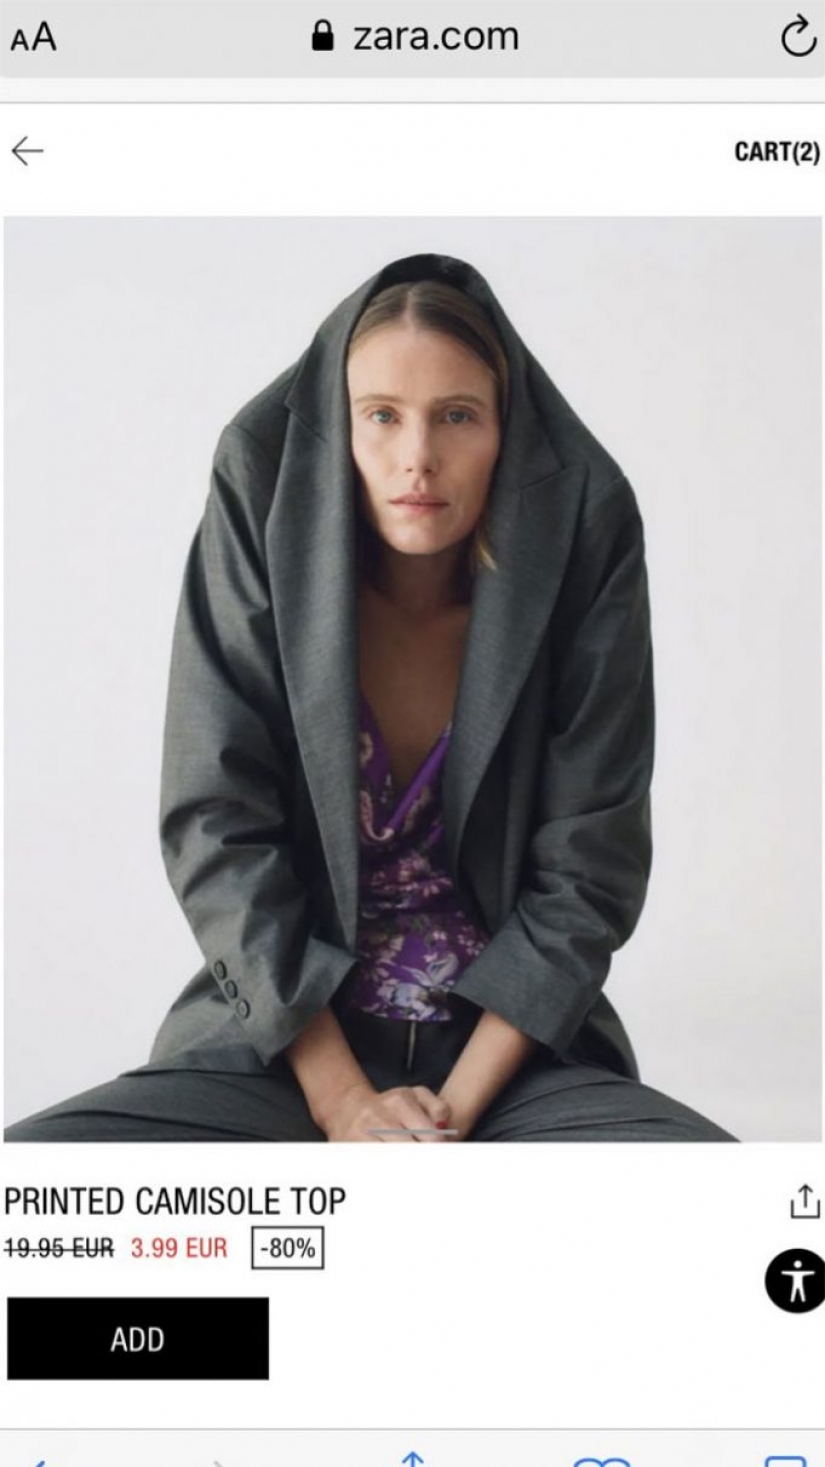 Los compradores de Zara dicen que es imposible comprar online debido a las extrañas poses de las modelos